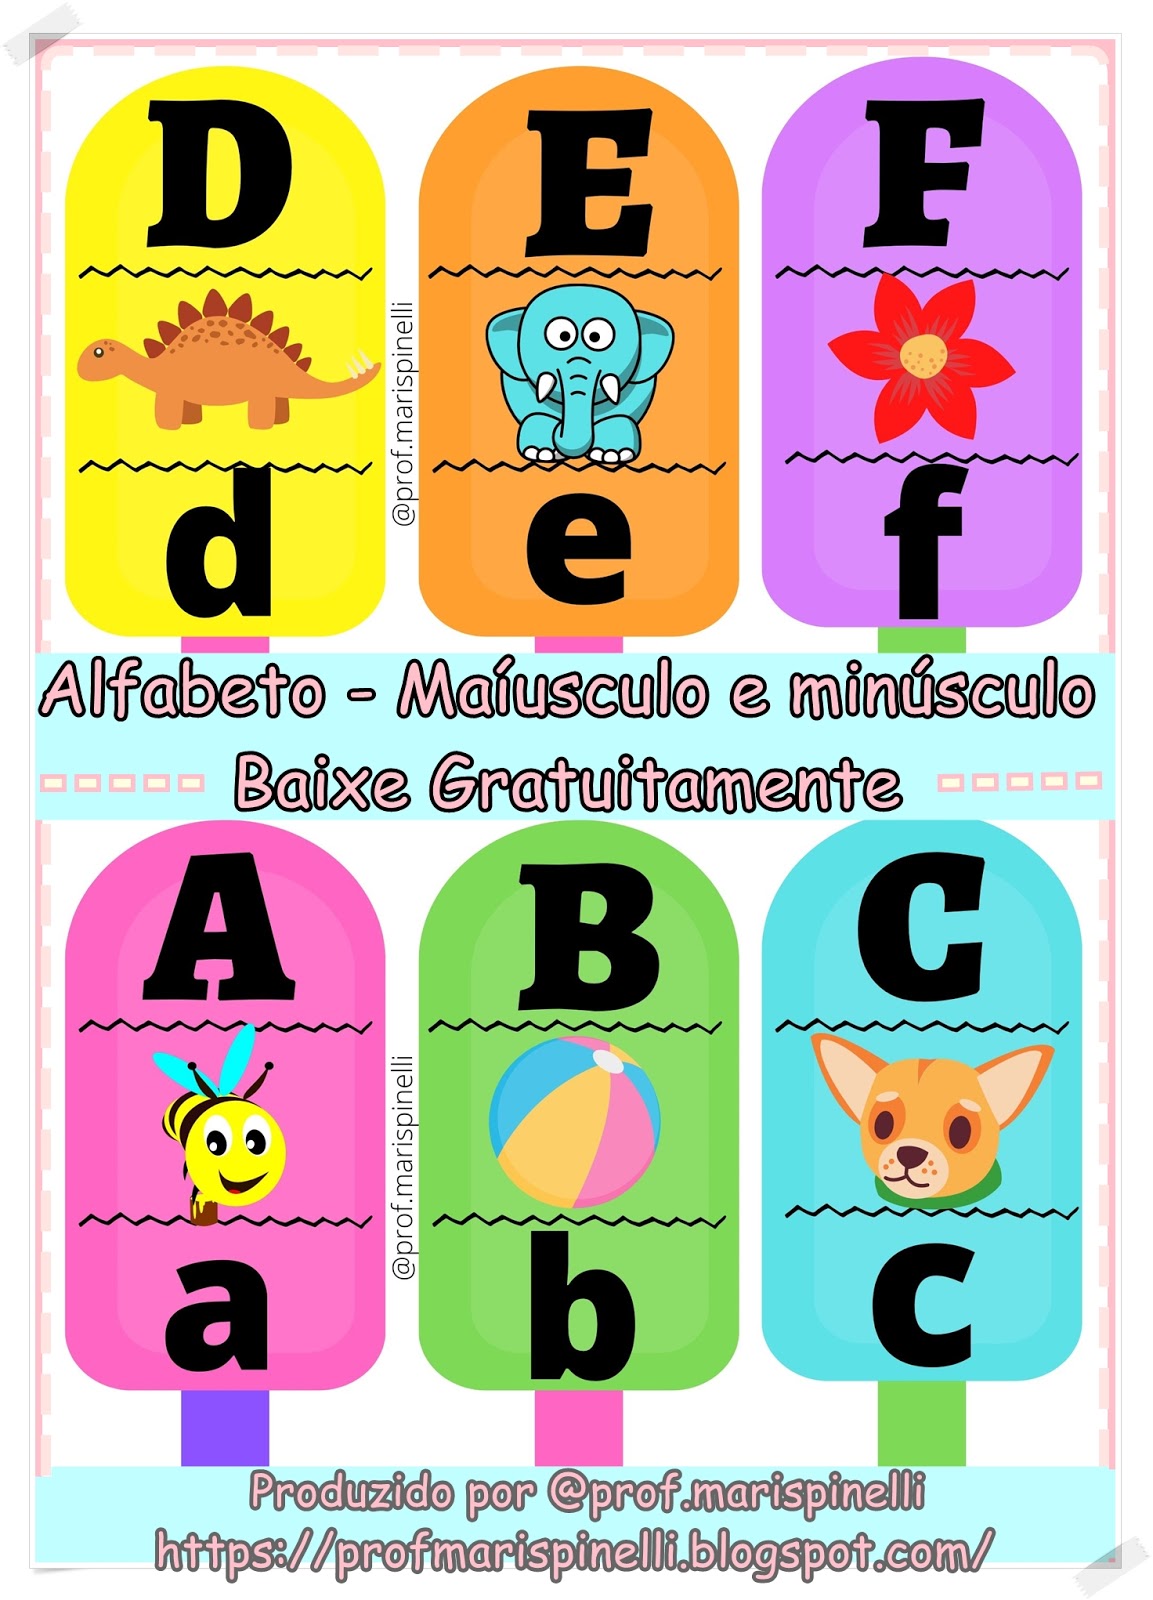 ALFABETO SORVETE.pdf  Alfabeto, Atividades para bercario 2, Atividades  para educação infantil